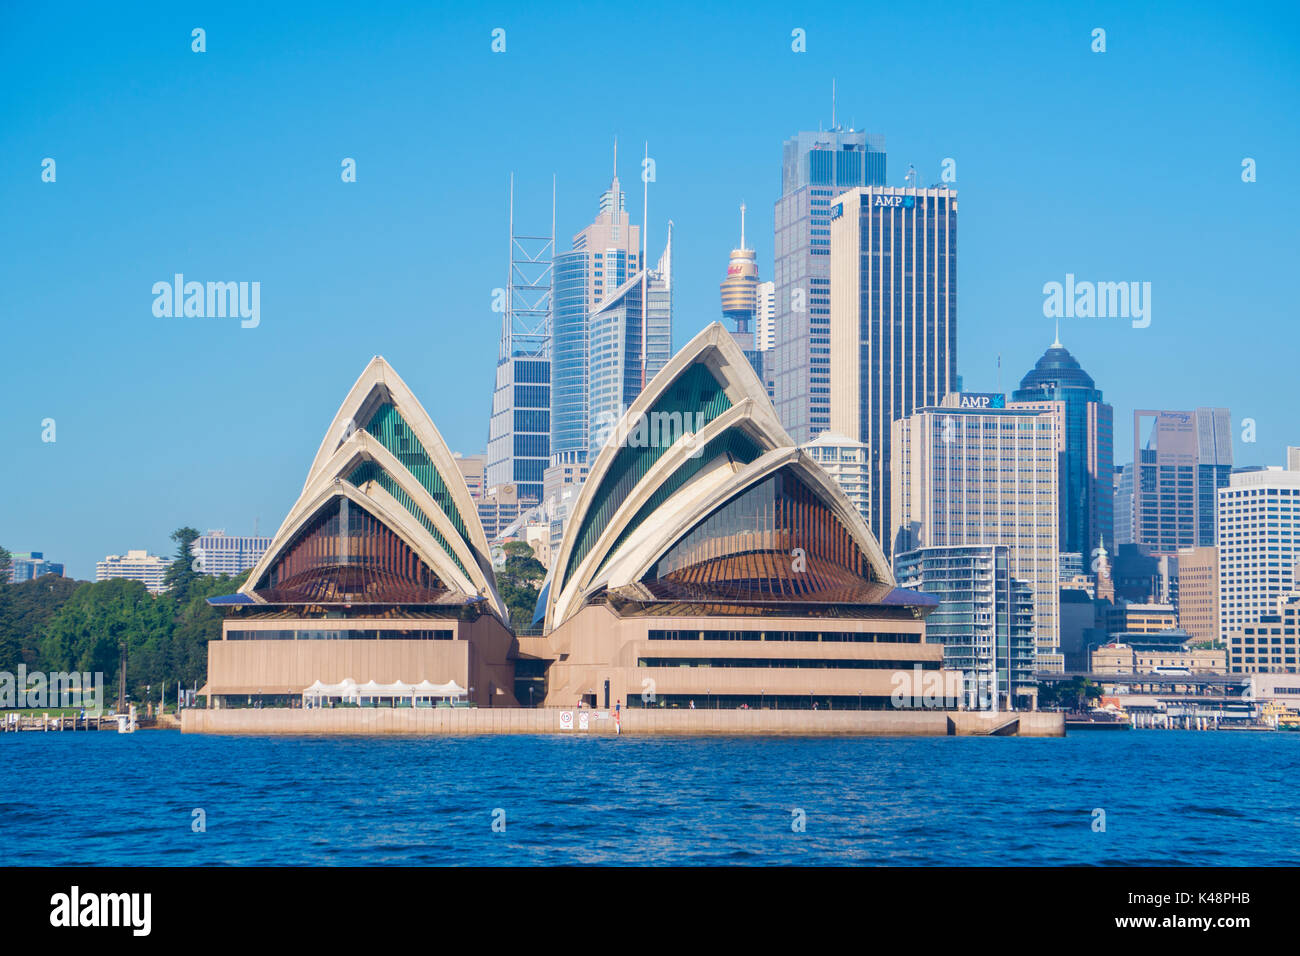 Sydney, Australia - May 13, 2017: Sydney Opera House and CBD in daytime Stock Photo